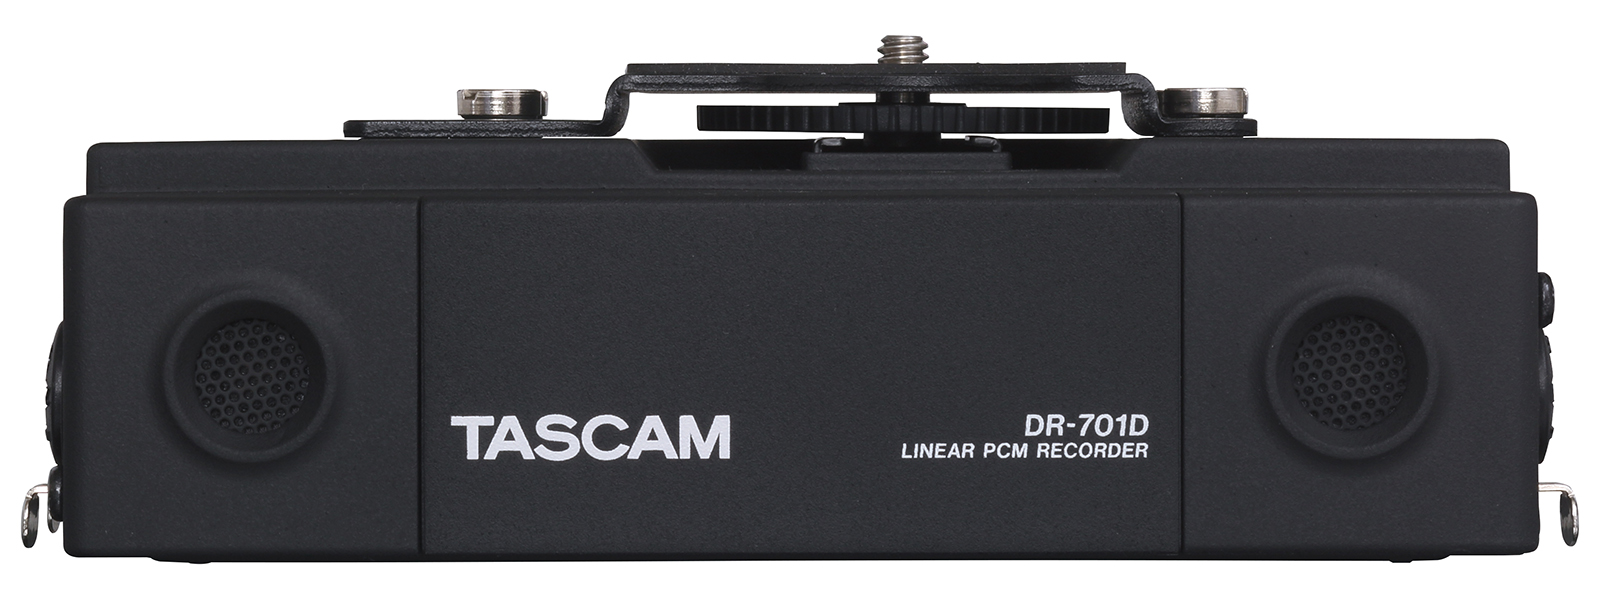 TASCAM DR-701D リニアPCMレコーダー